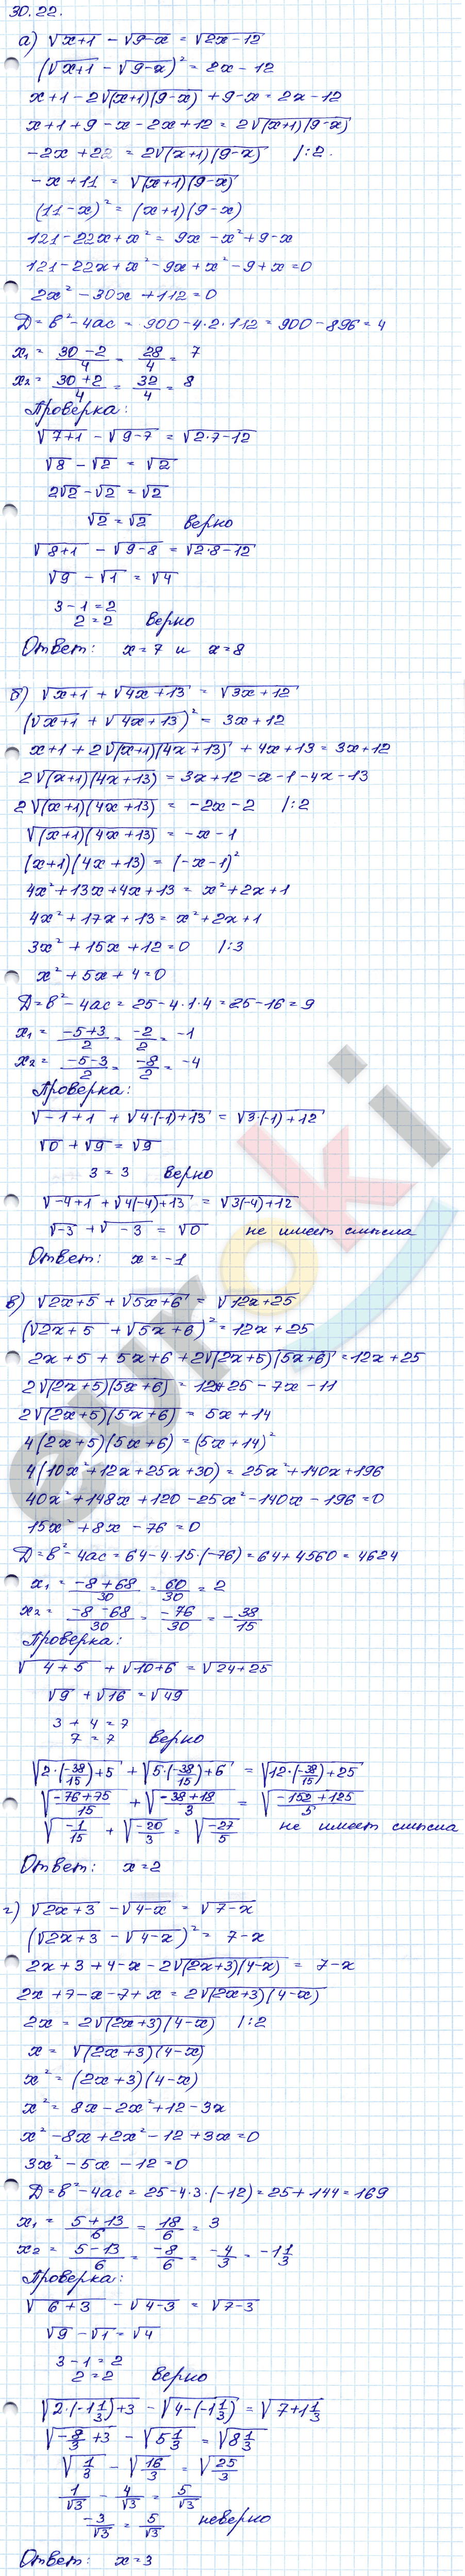 Алгебра 8 класс. ФГОС Мордкович, Александрова, Мишустина Задание 22